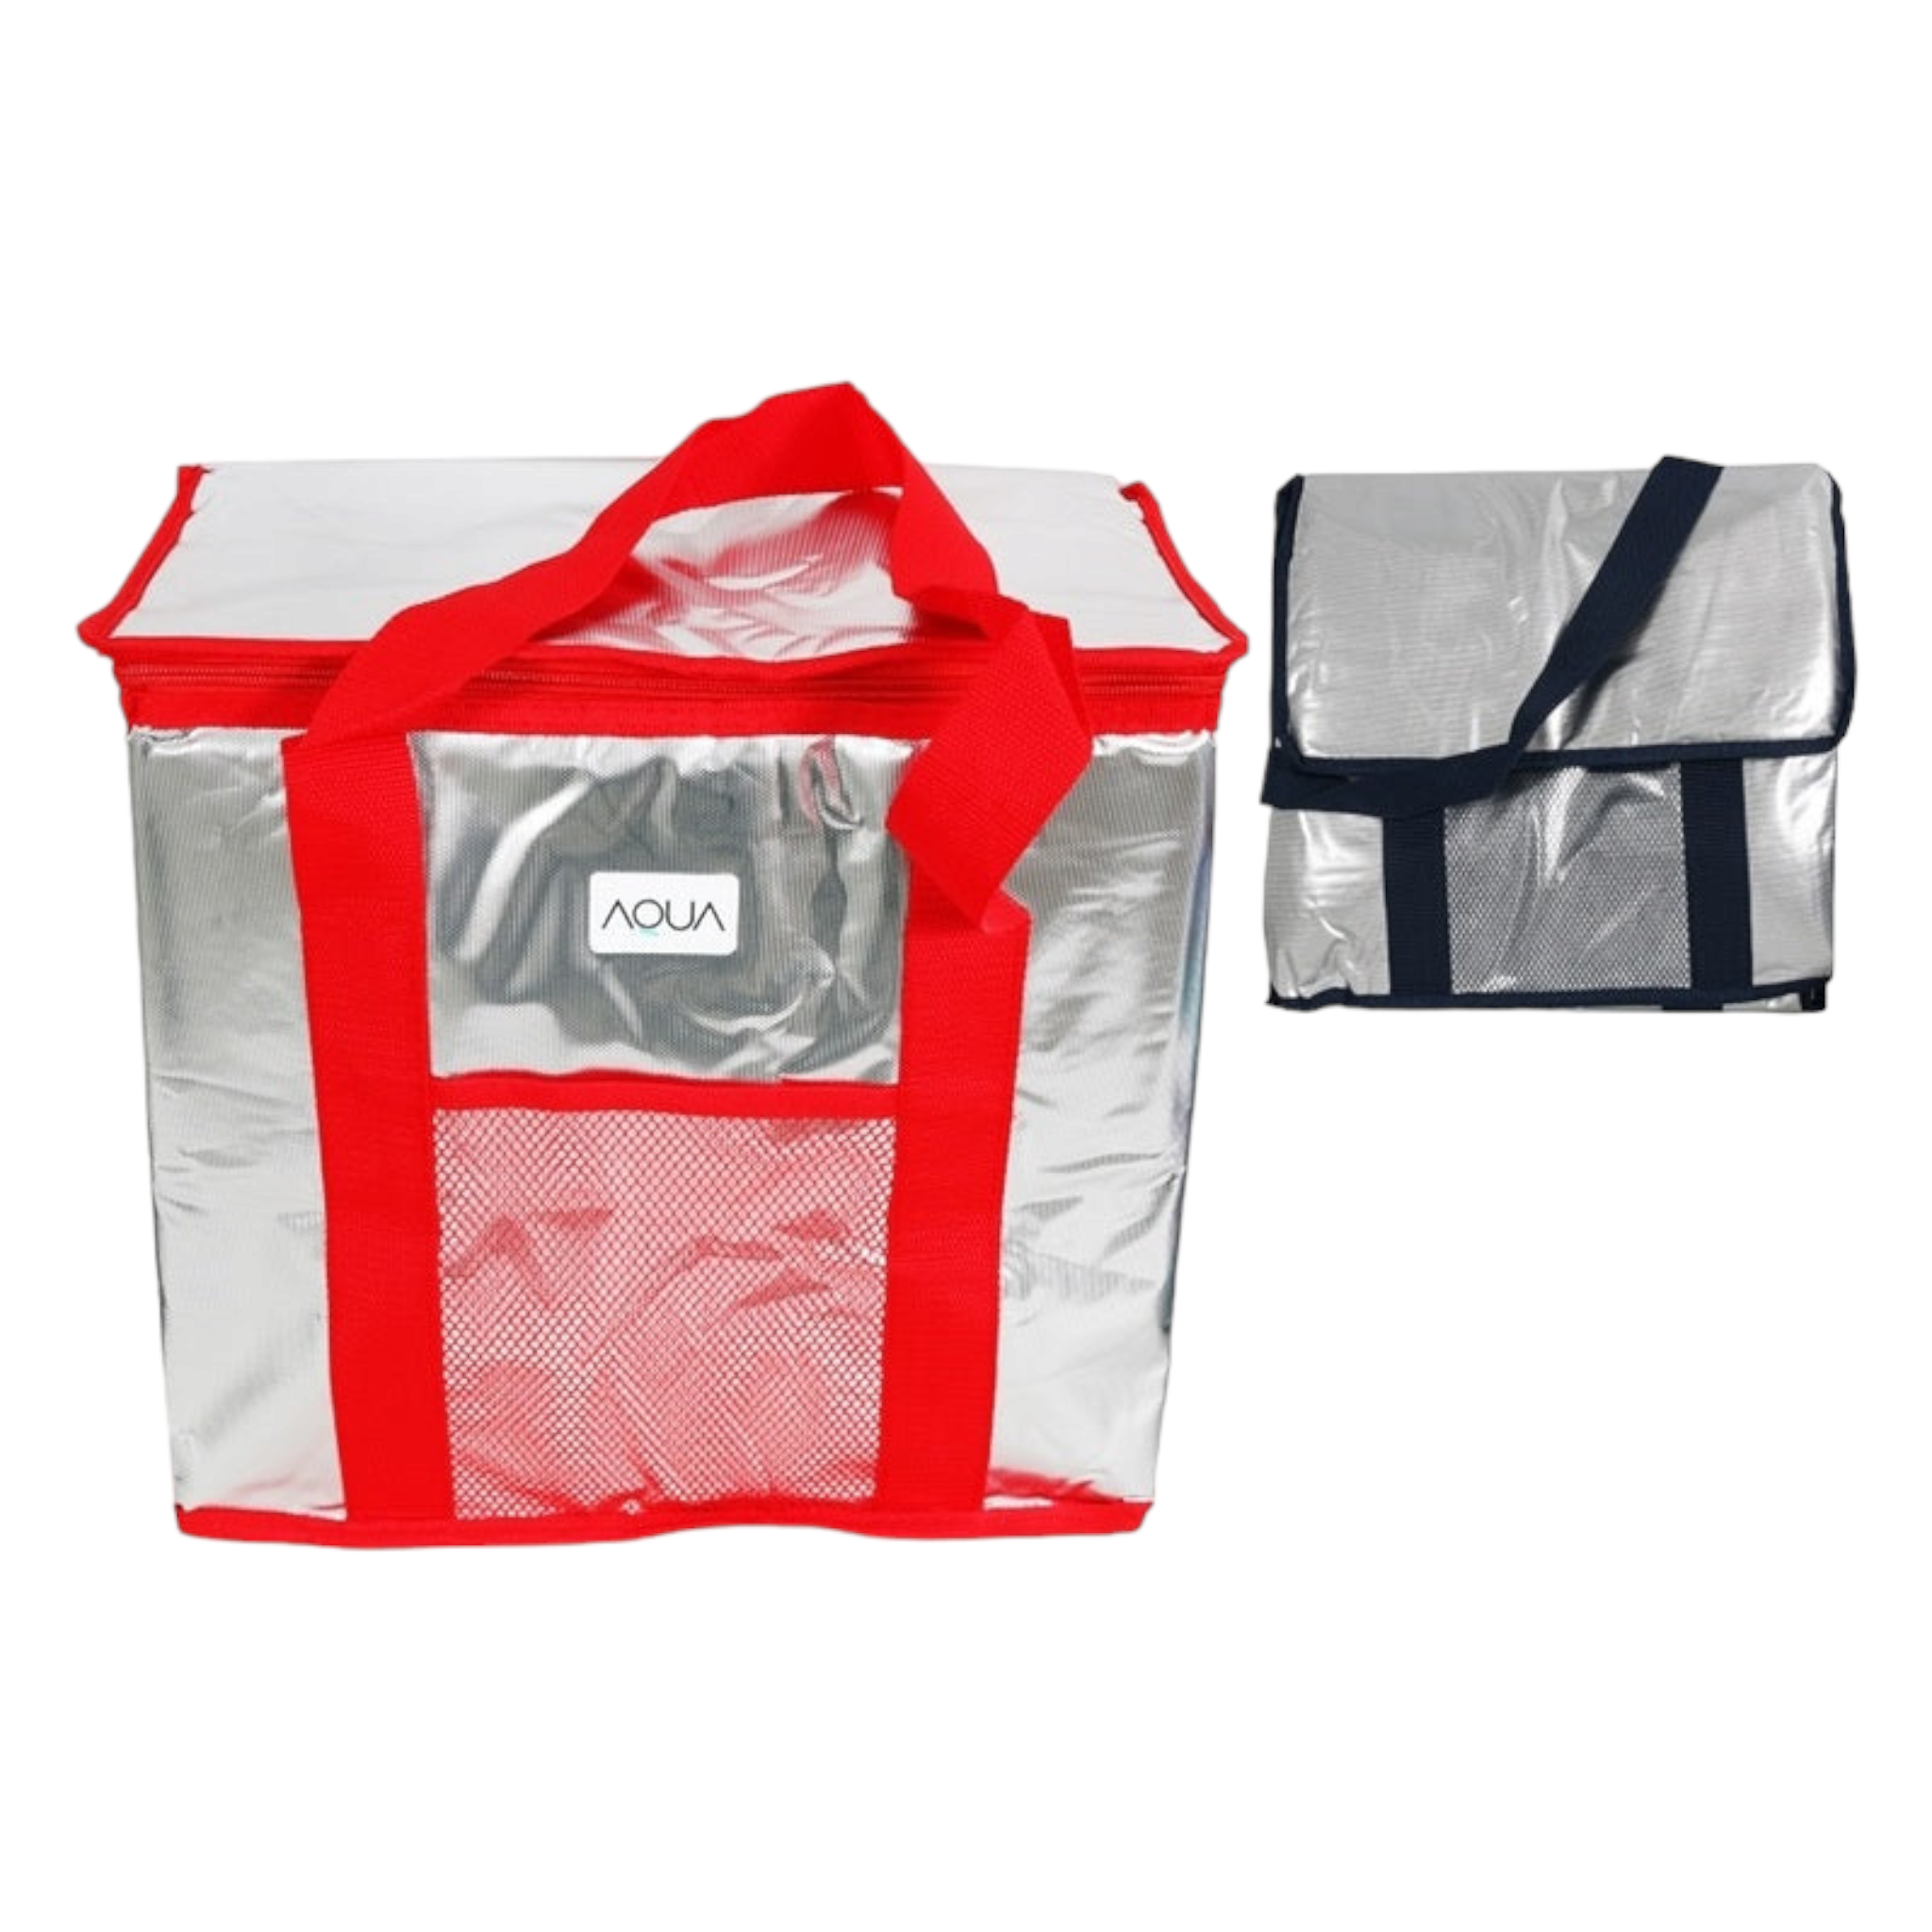 Aqua 26L Insulated Thermal Cooler Picnic Bag 34509